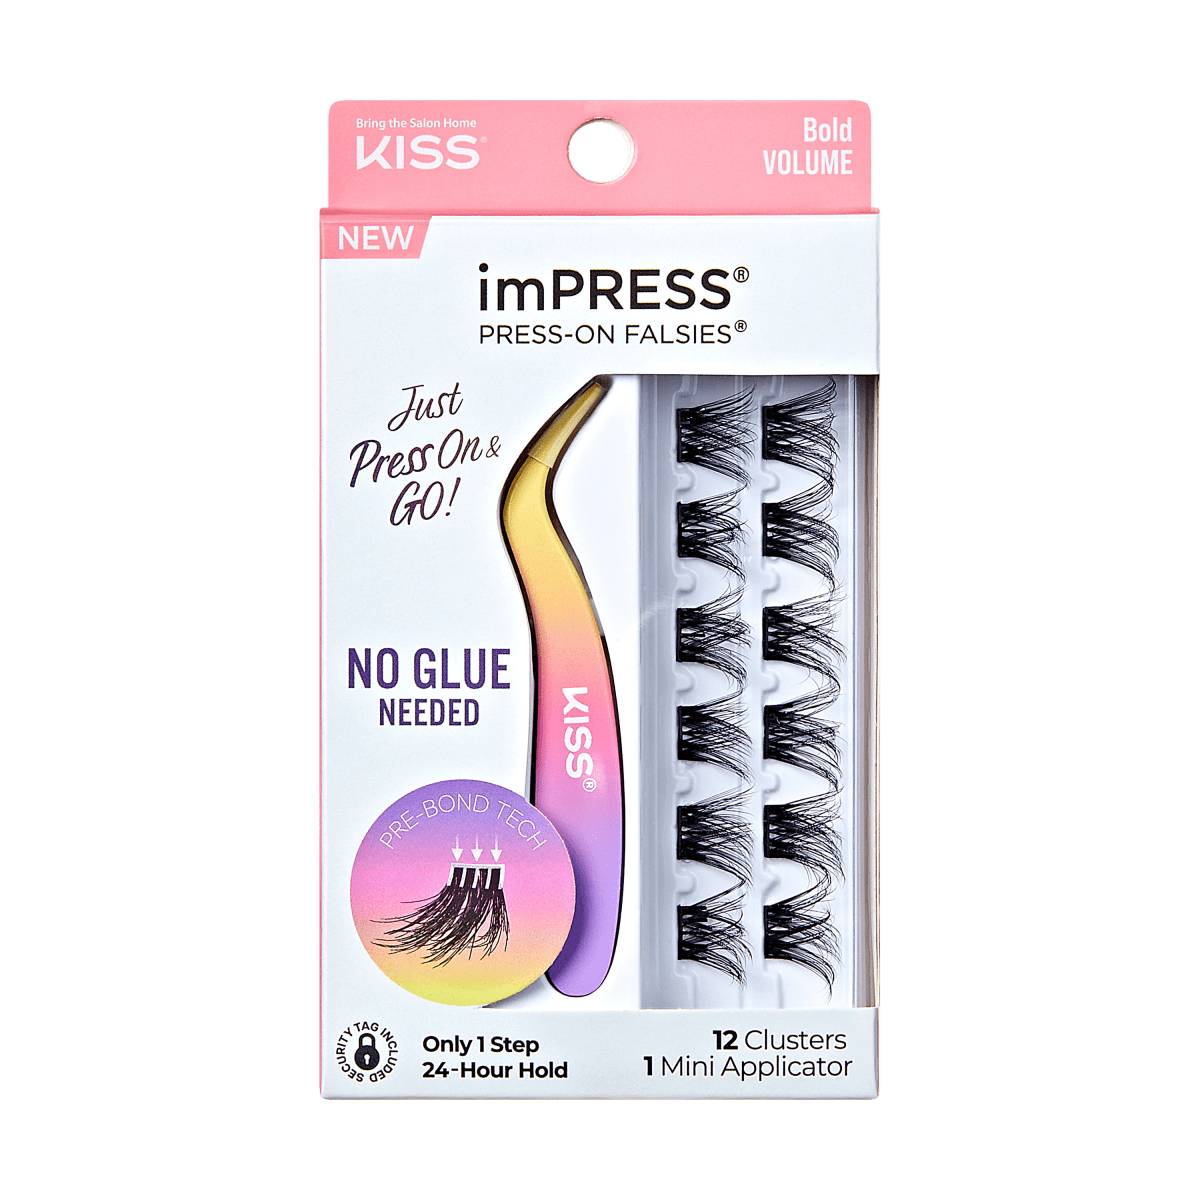 imPRESS Press-On Falsies Minipack, 12 Clusters + Applicator - Bold